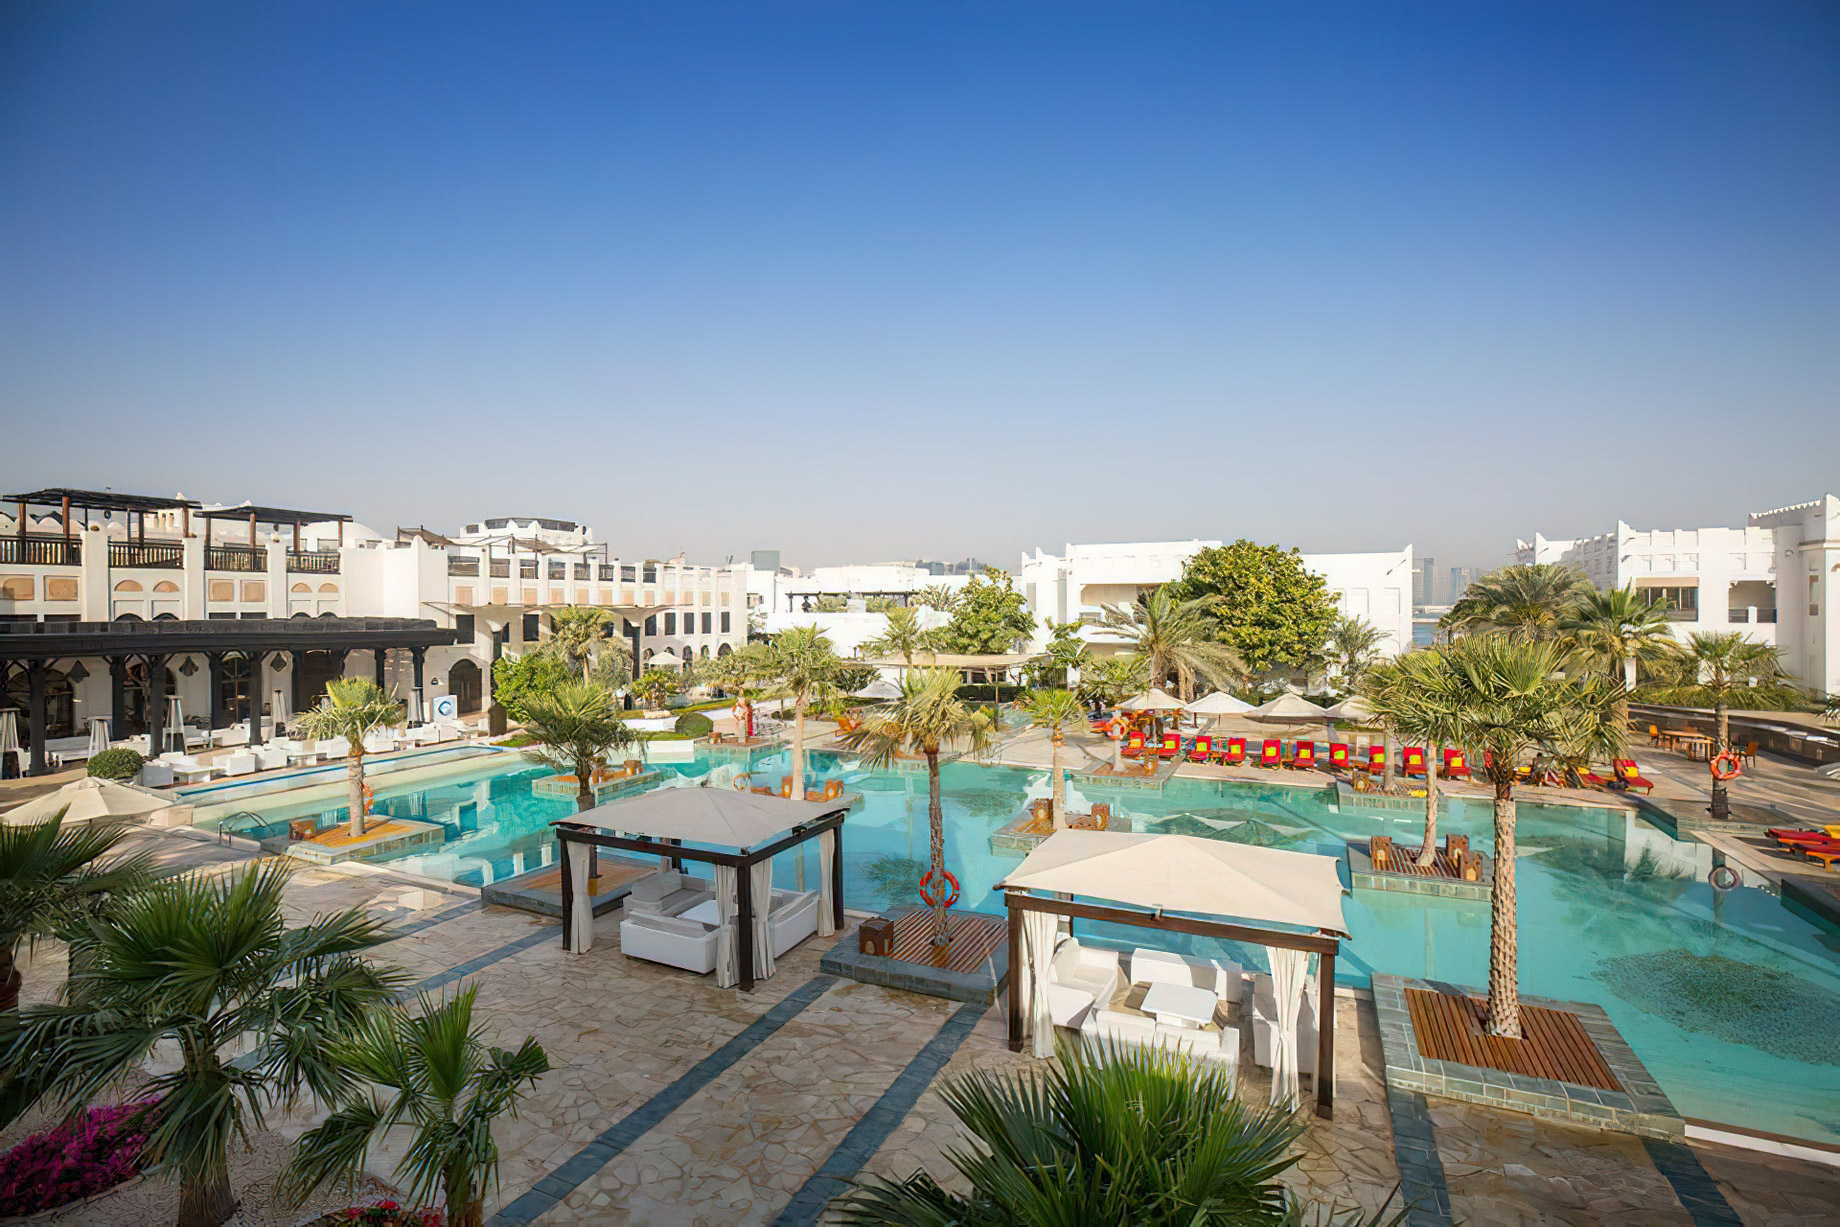 Sharq Village & Spa, A Ritz-Carlton Hotel – Doha, Qatar – Outdoor Pool Aerial View